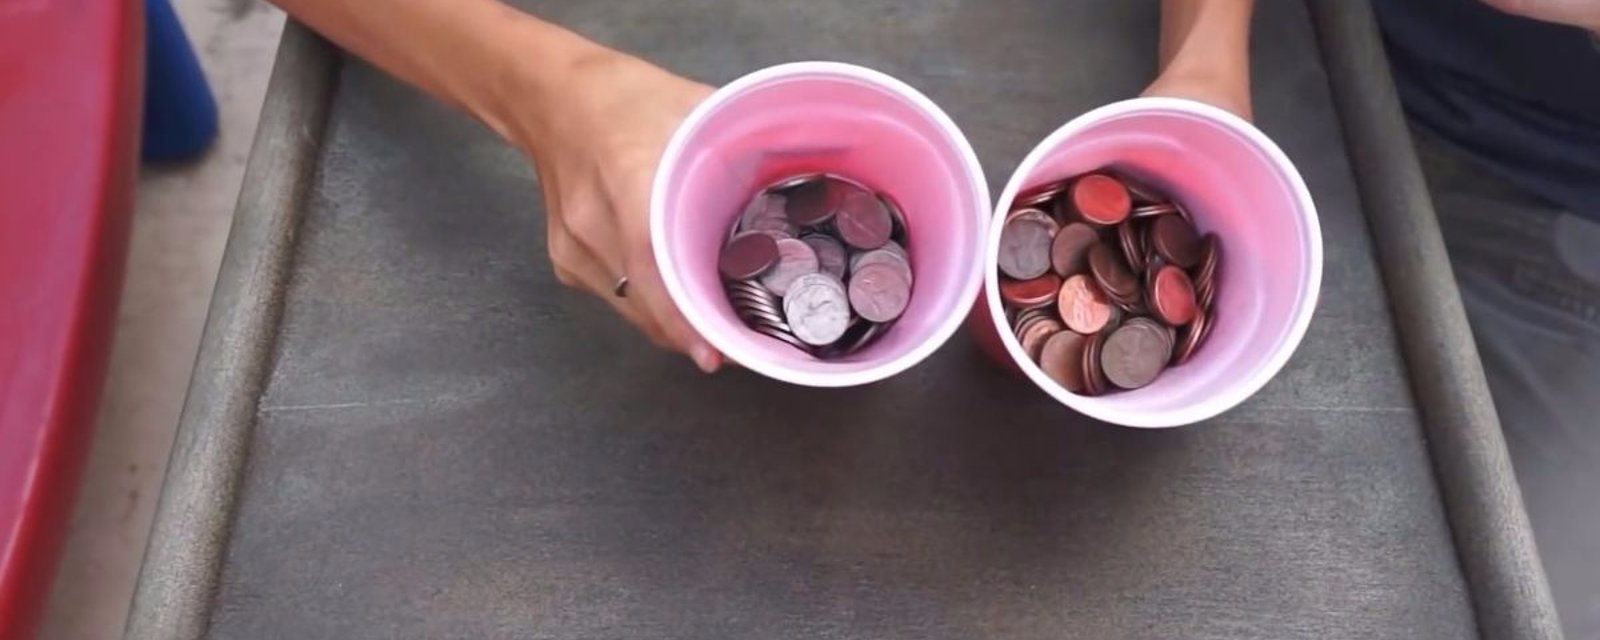 Avec quelques pièces de monnaie, cette jeune fille transforme une table pour l’offrir en cadeau à sa mère!